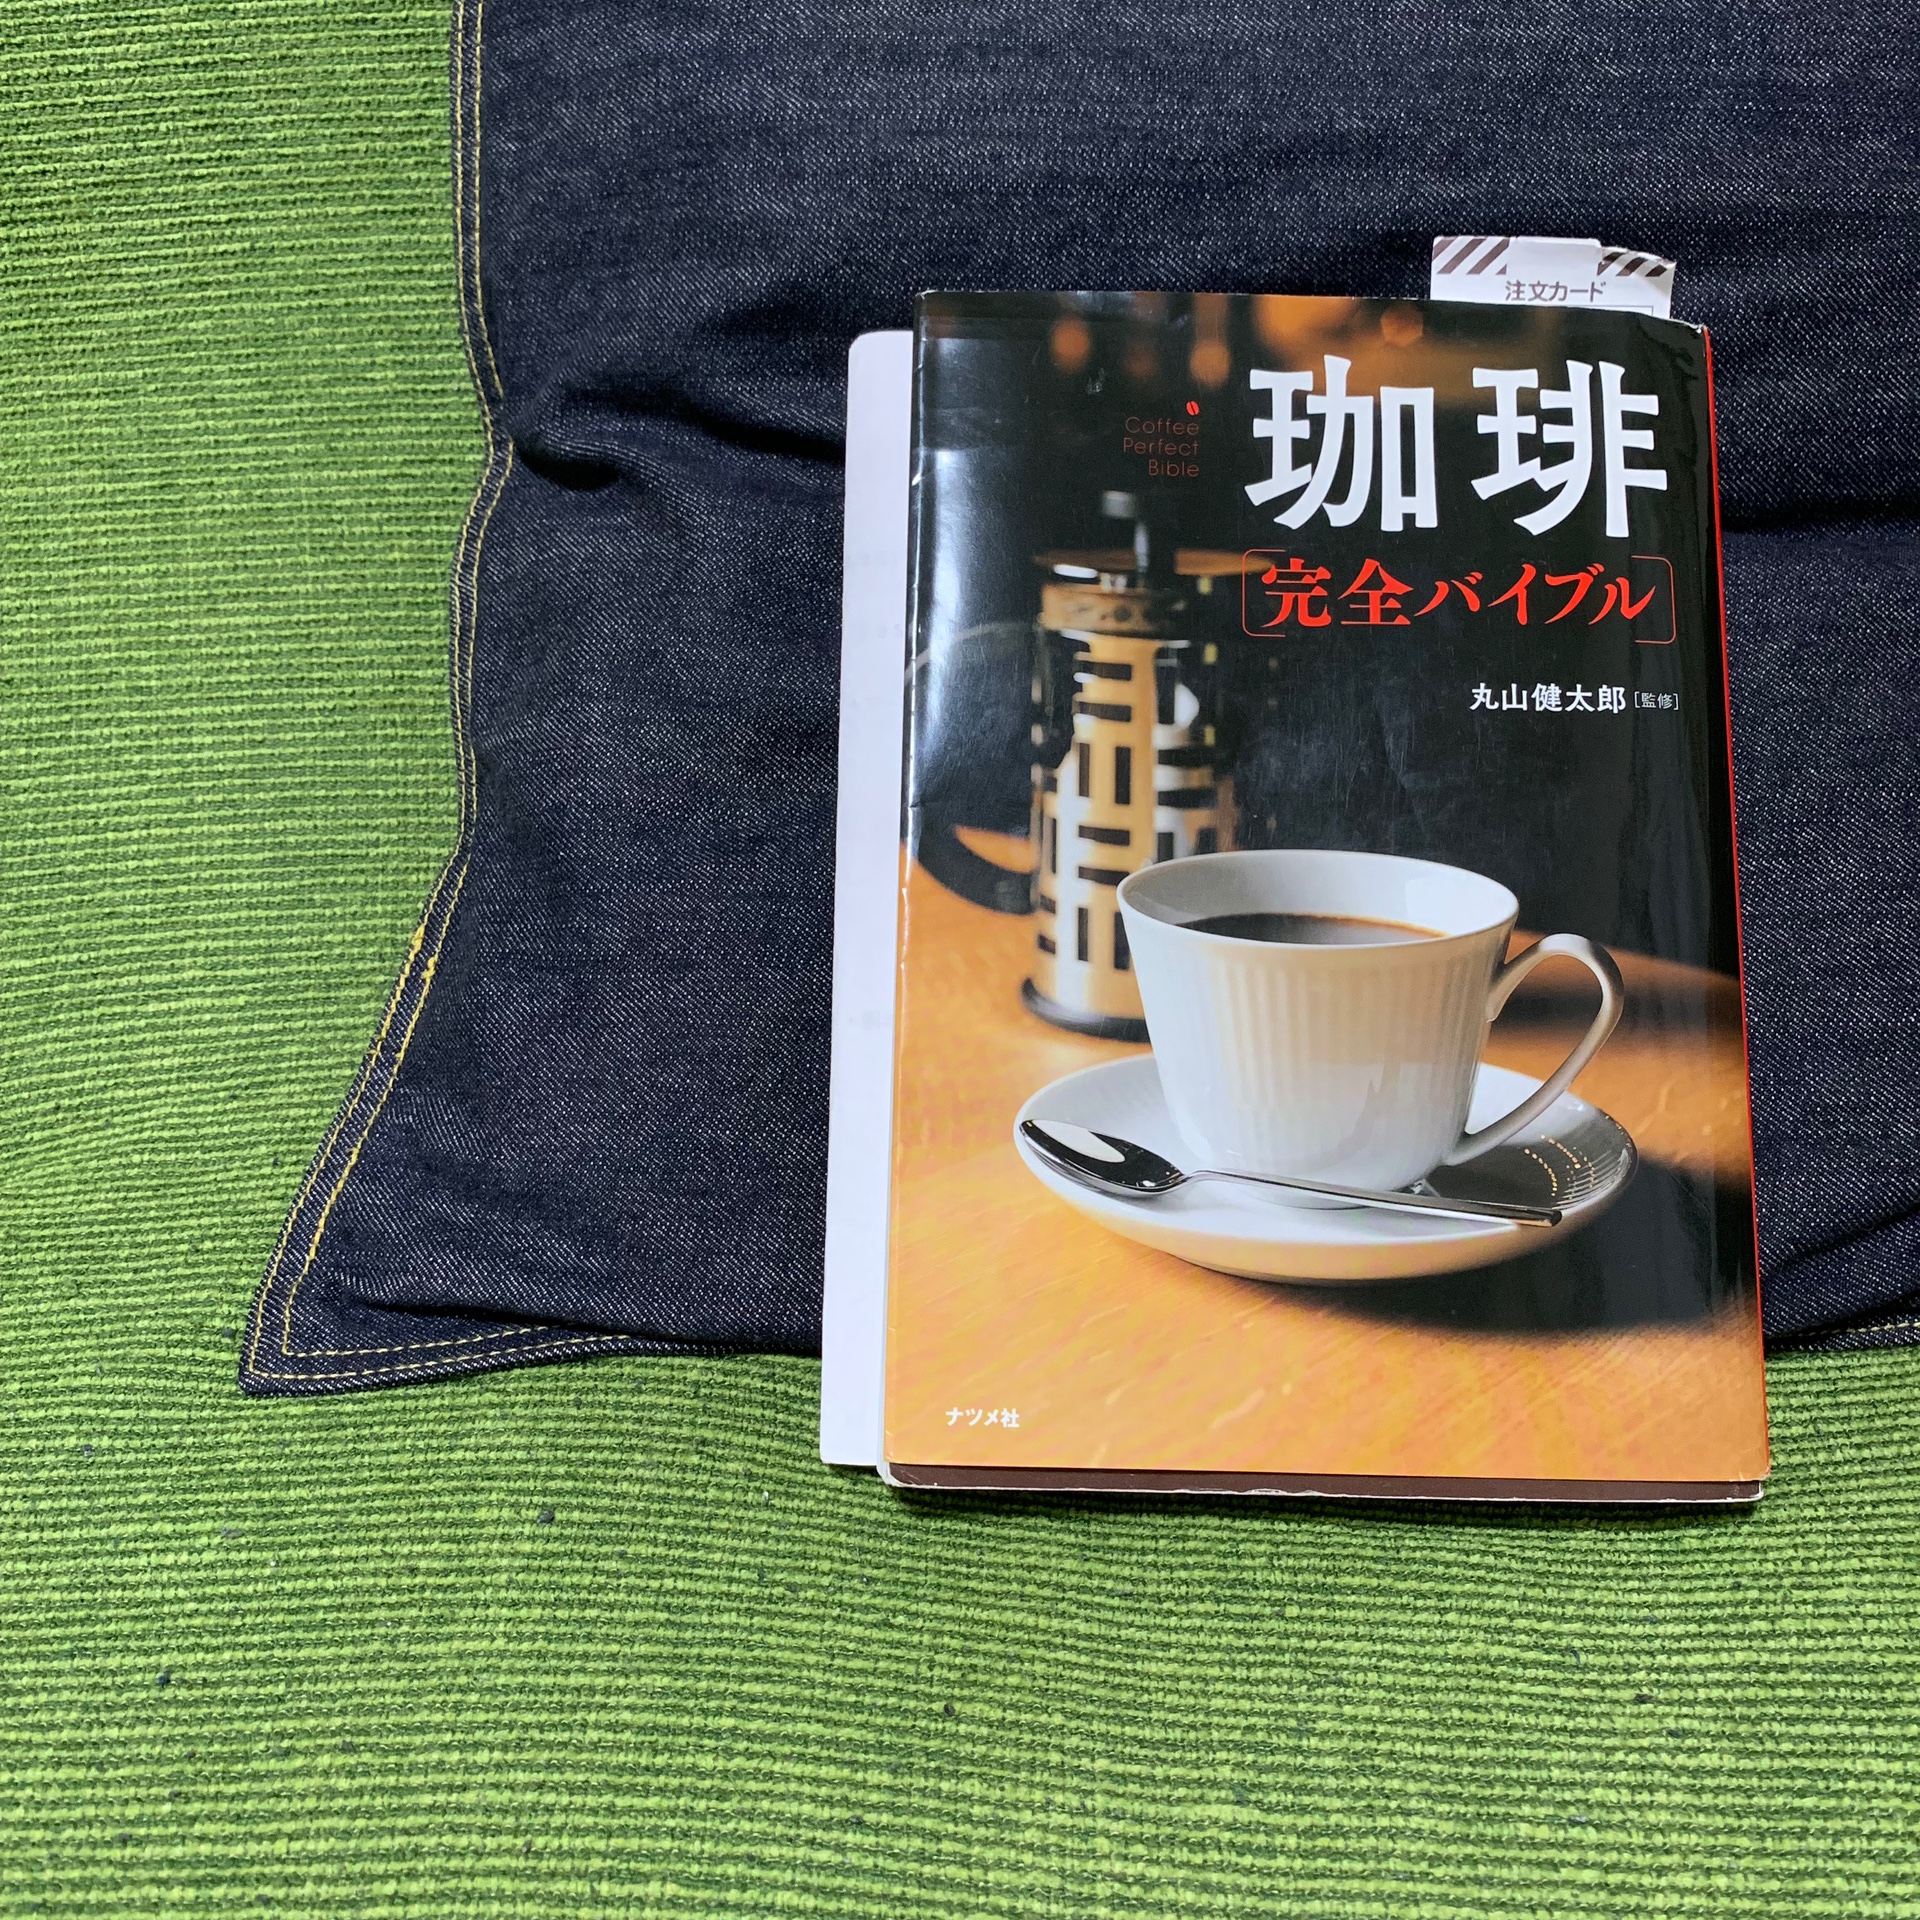 【珈琲完全バイブル】入門者におすすめのコーヒー本。写真・イラストで読みやすい！